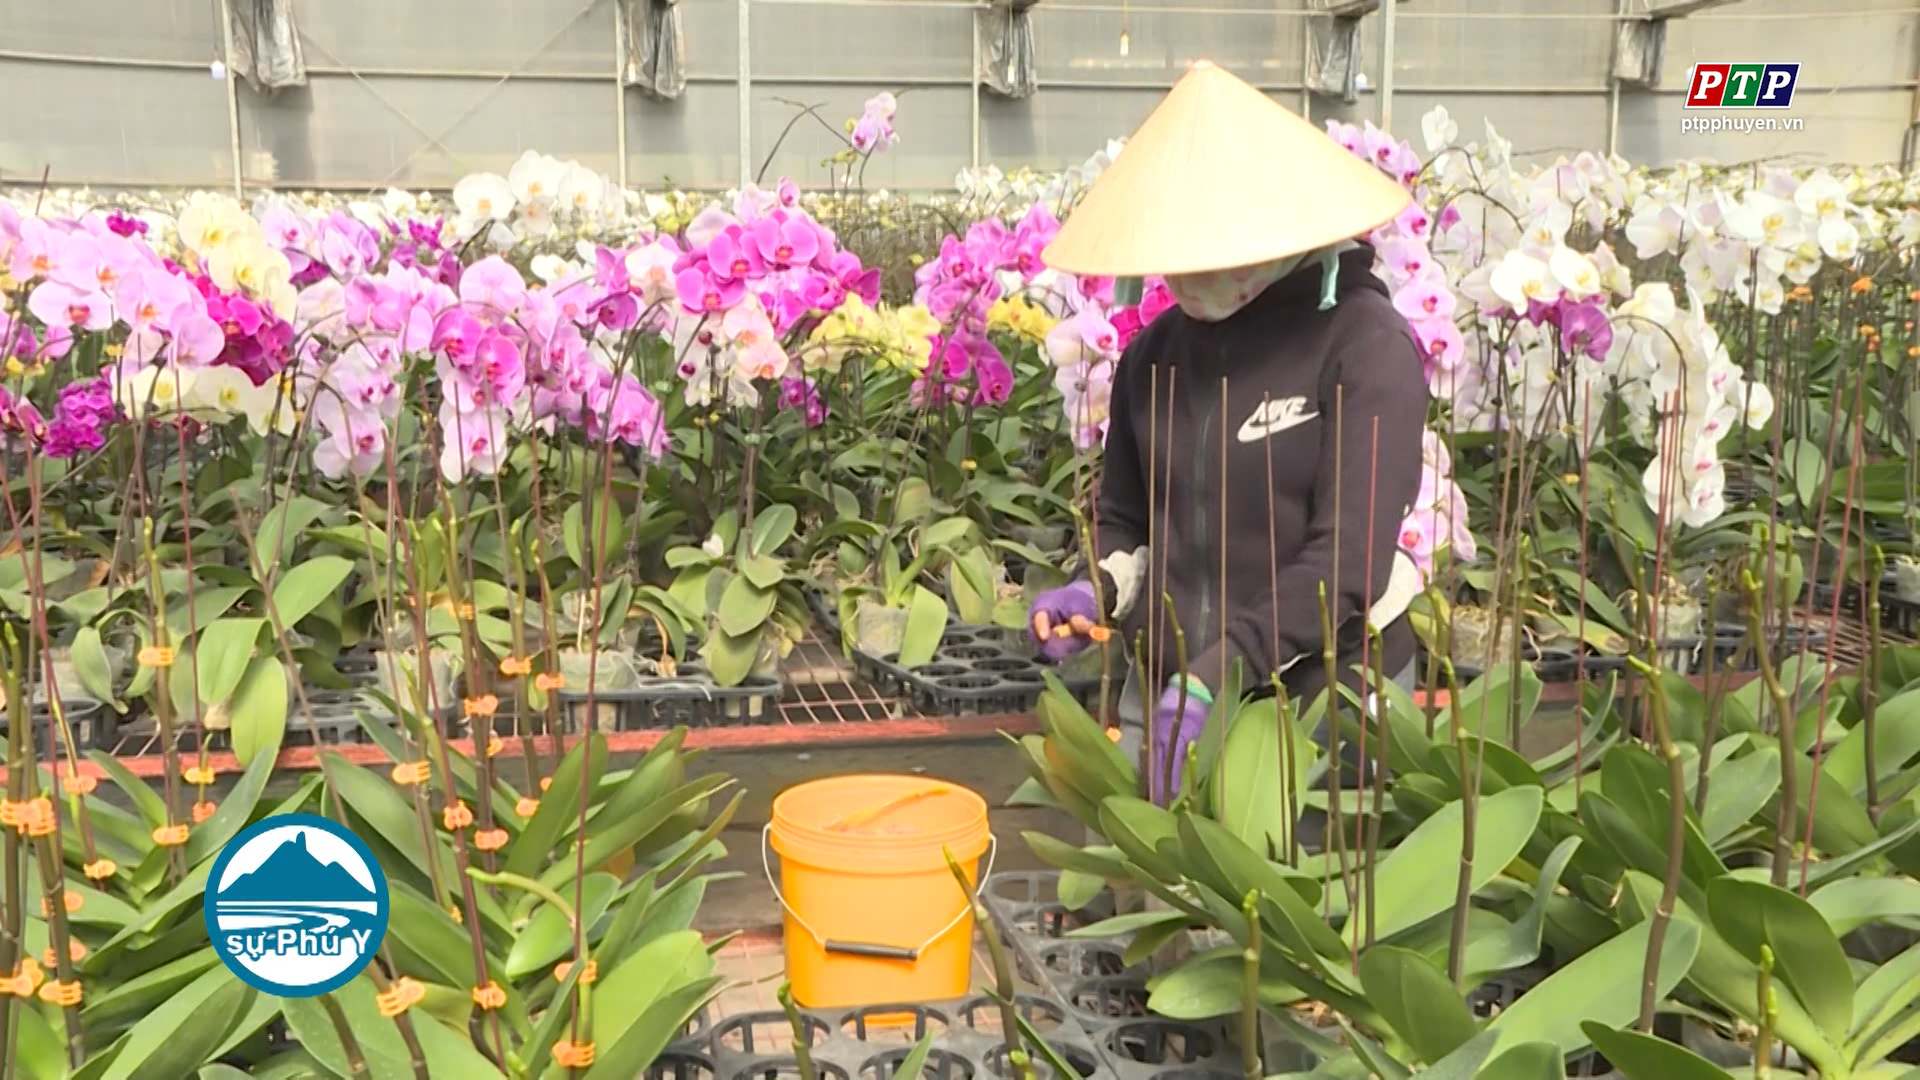 Phú Yên phát triển nông nghiệp công nghệ cao - hướng đi tất yếu